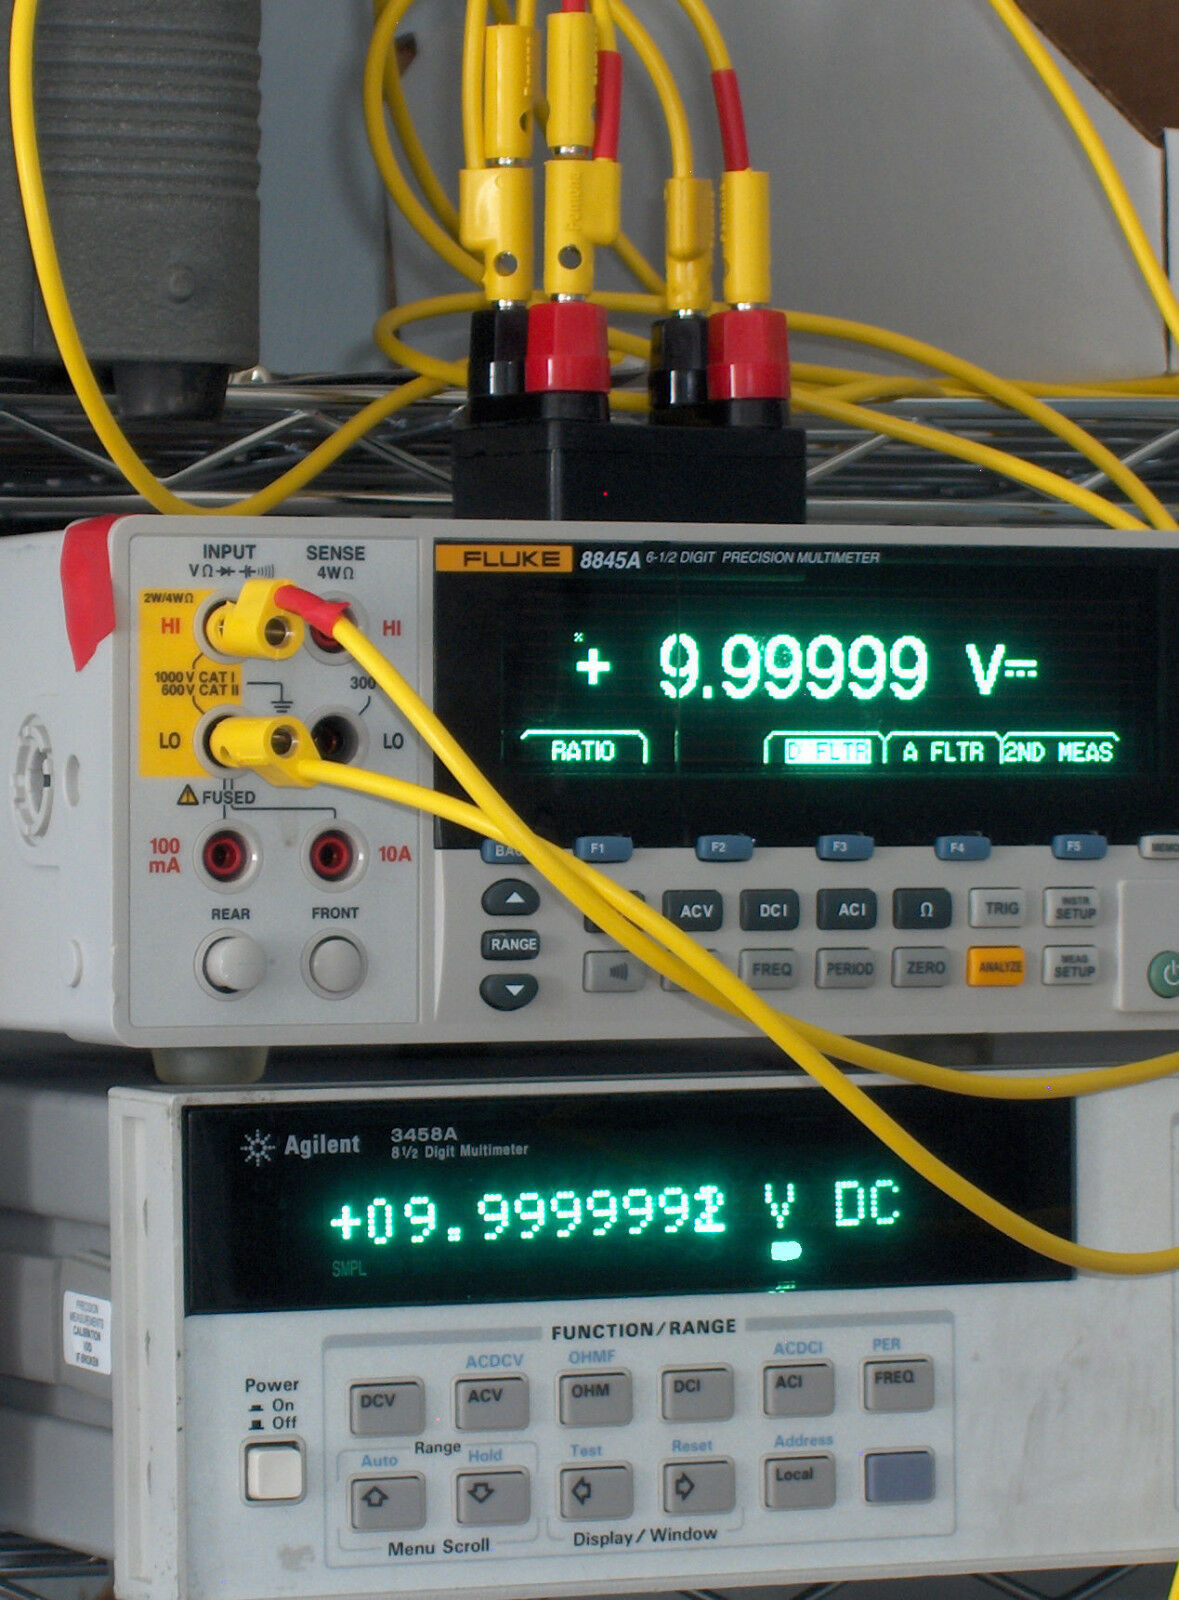 10 Volt 10 V Dc  Prec. Voltage Reference Standard, Nulled To Fluke 732a Or 732b